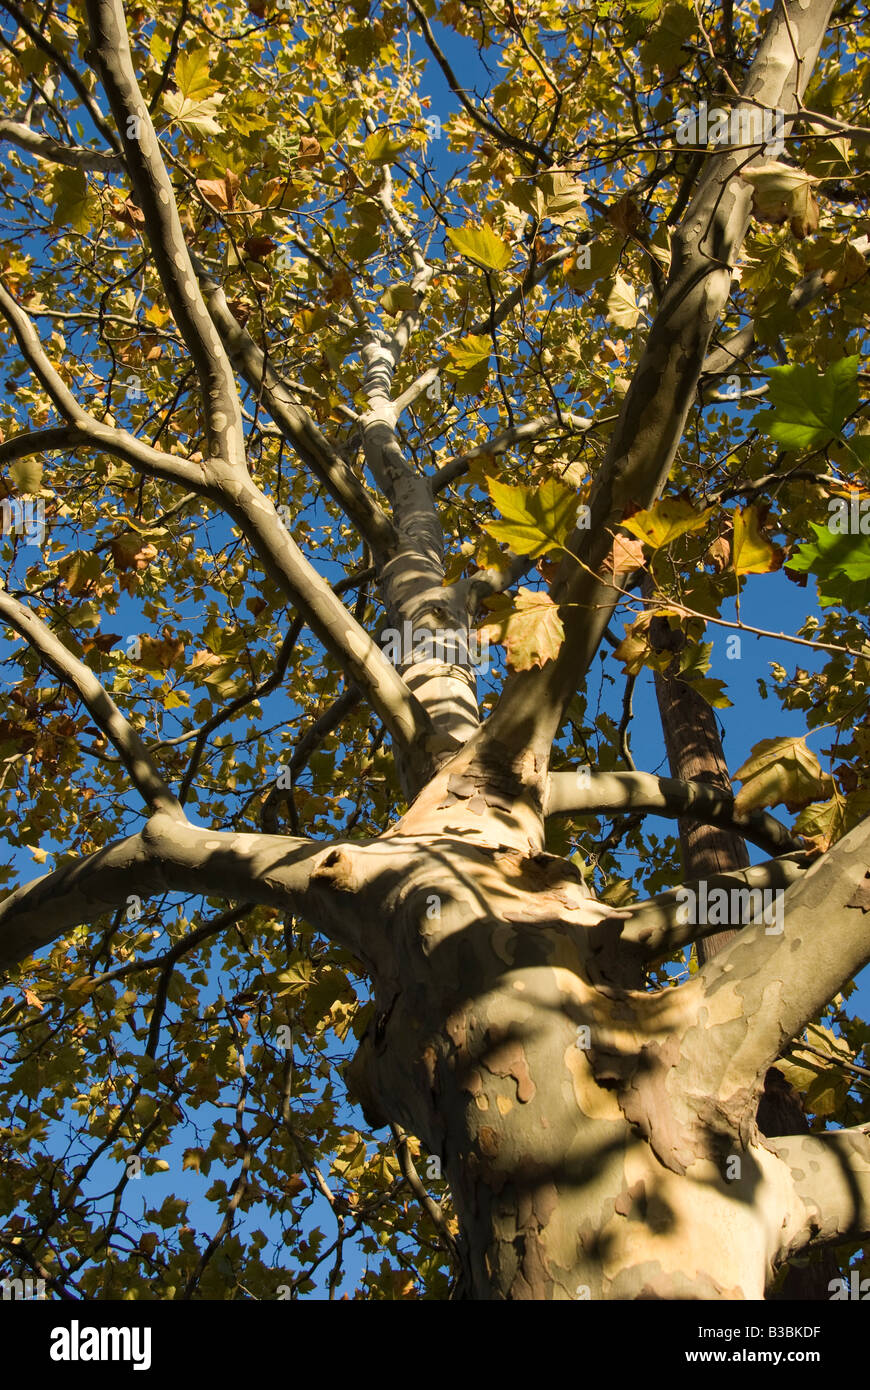 Le tronc d'un bouleau s'élève dans le ciel avec les feuilles d'automne Banque D'Images